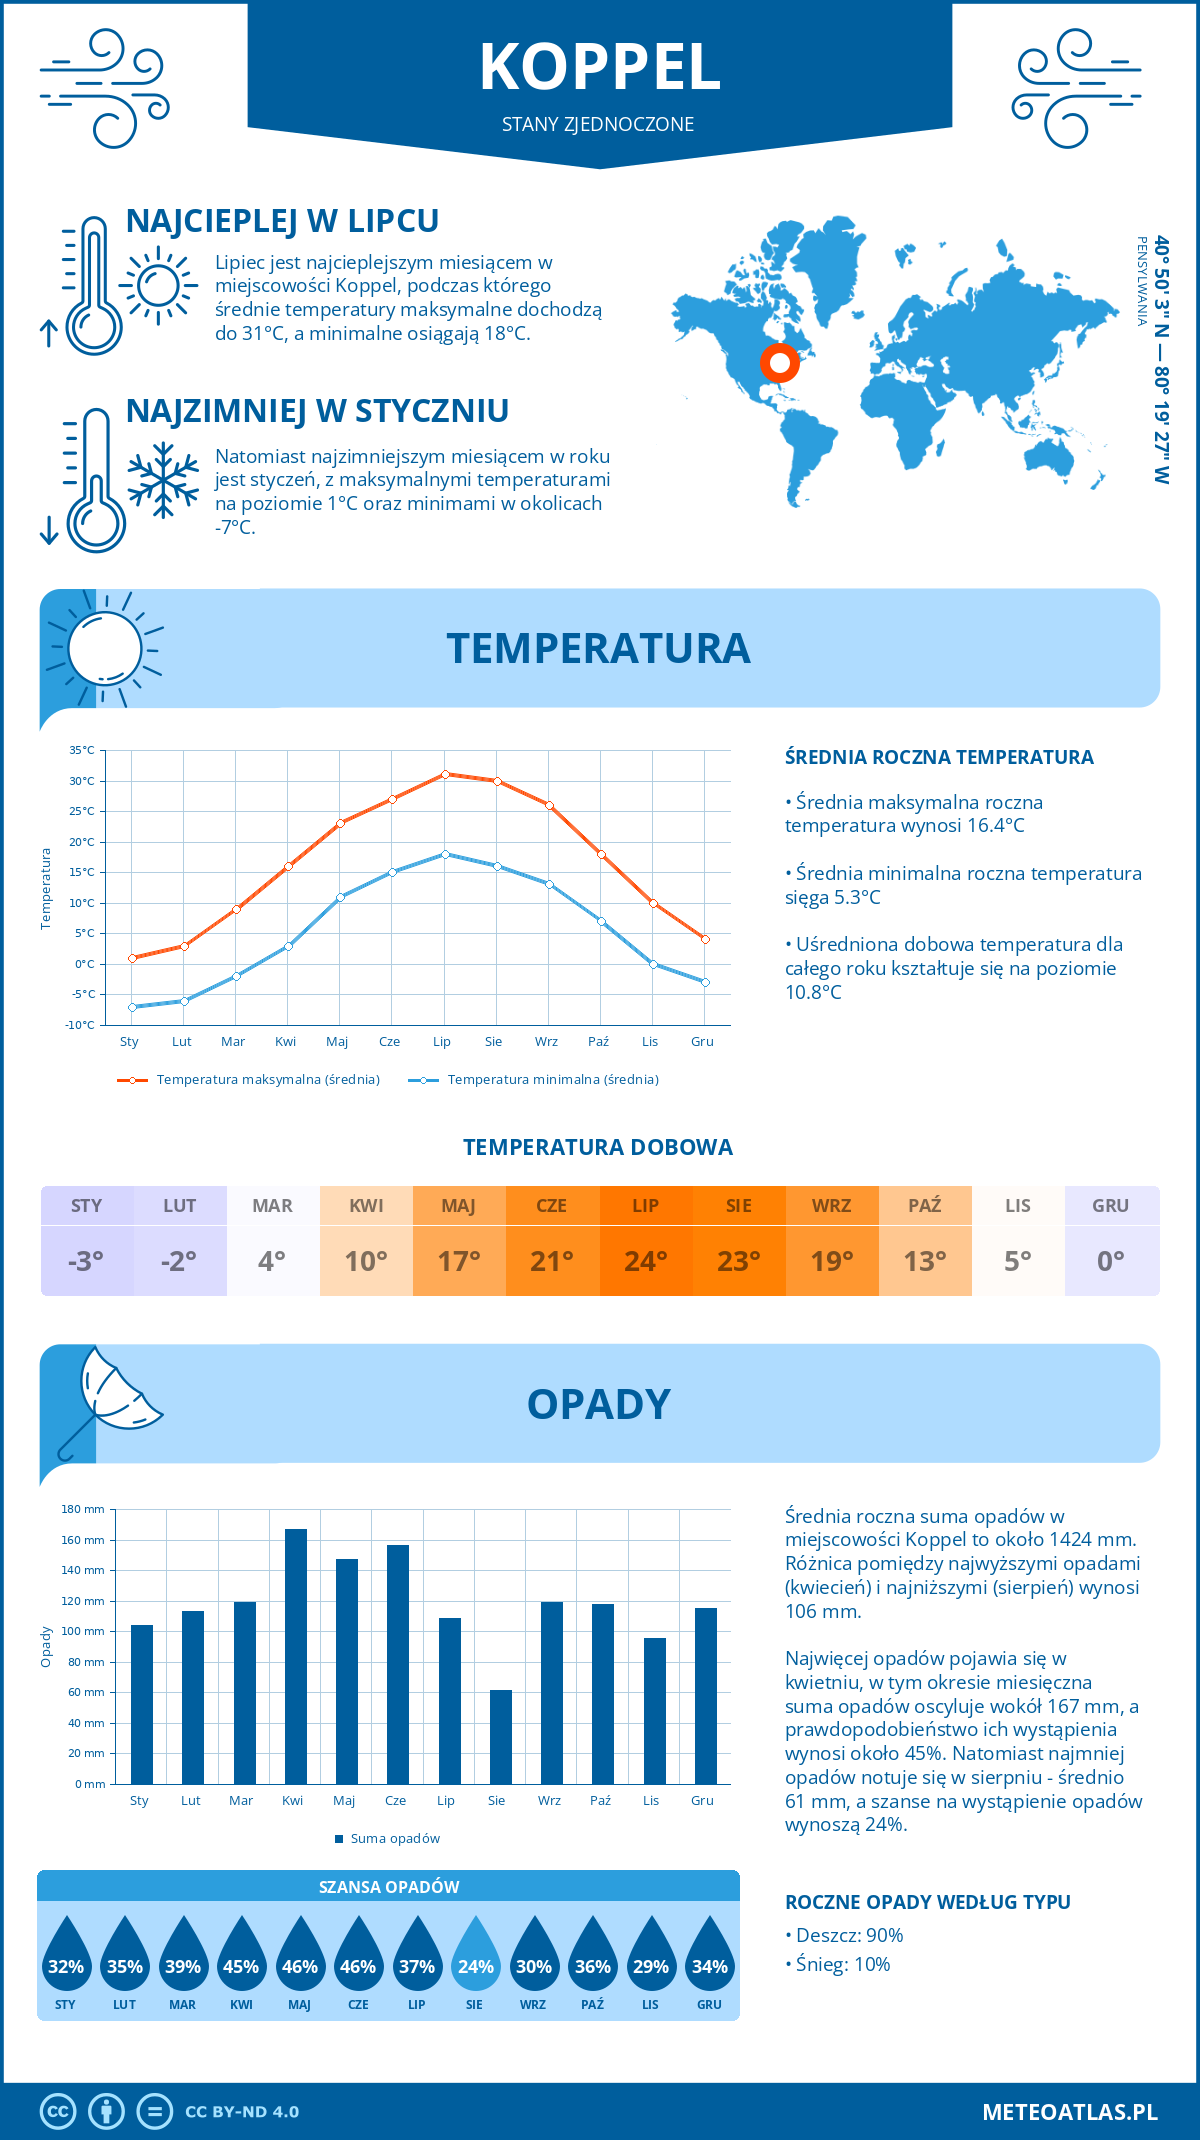 Pogoda Koppel (Stany Zjednoczone). Temperatura oraz opady.